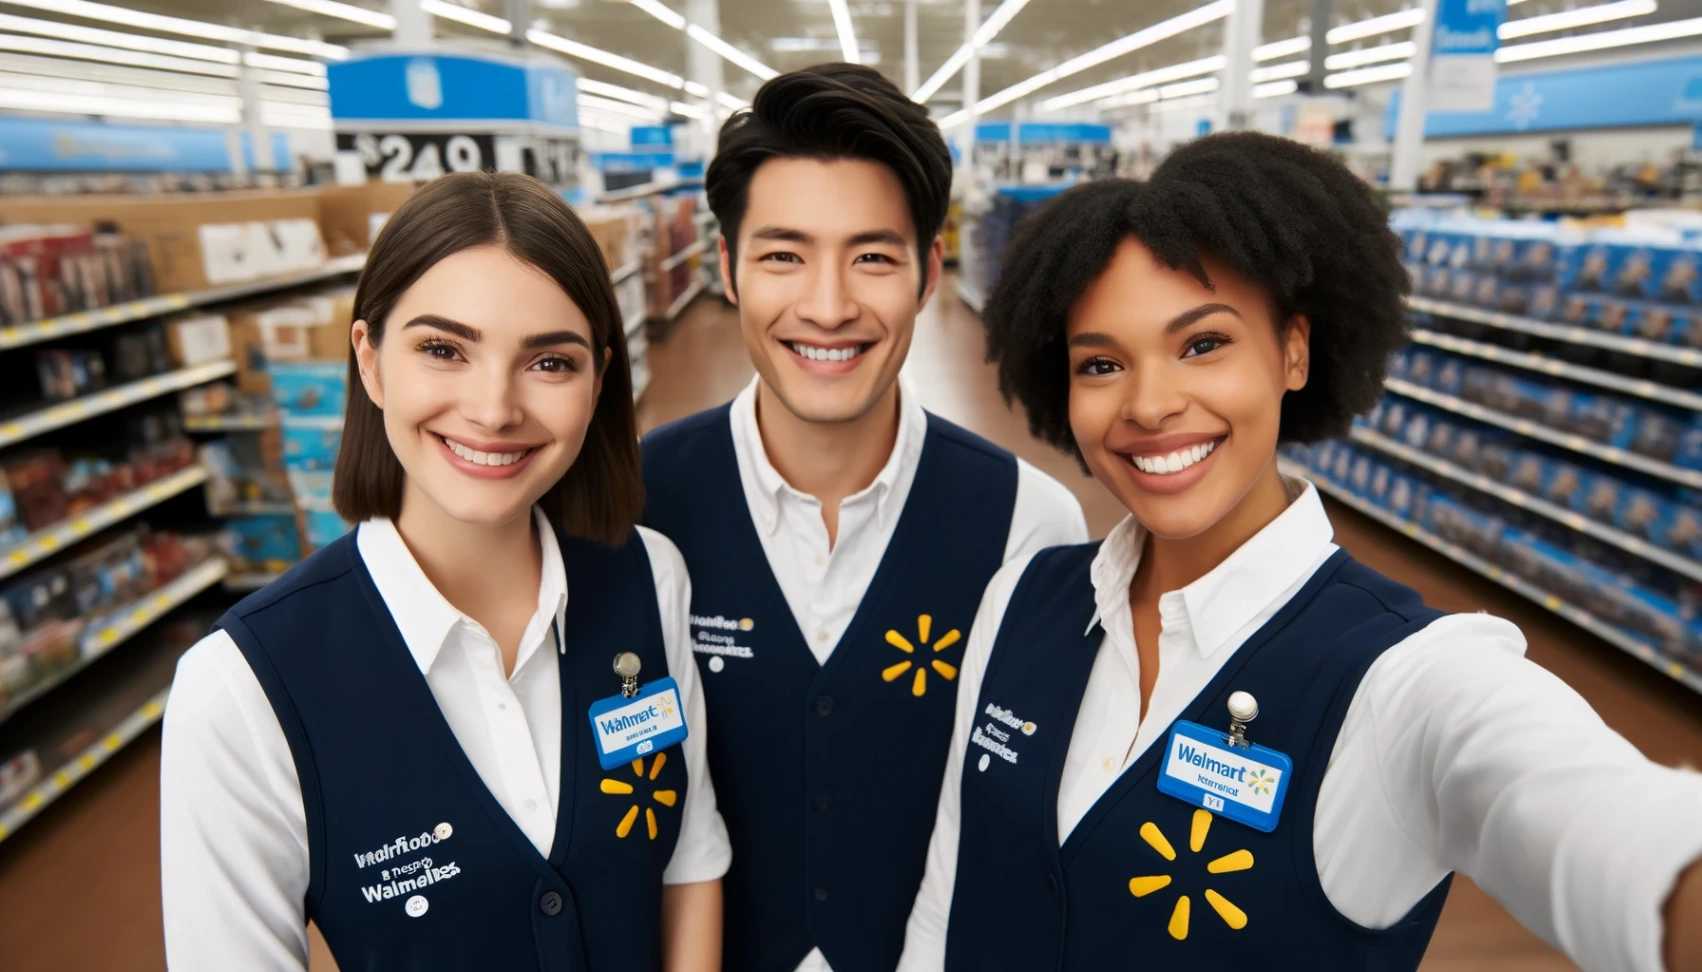 Carrières chez Walmart : Pas à pas vers votre candidature réussie